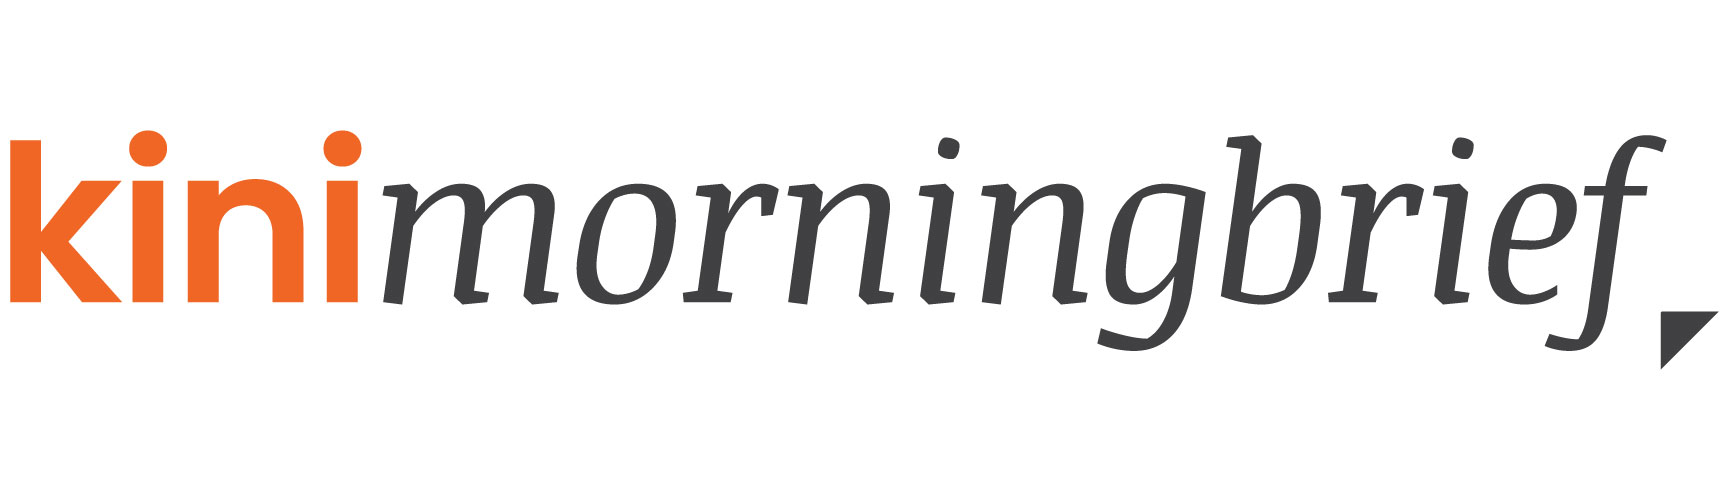 kini morning brief logo